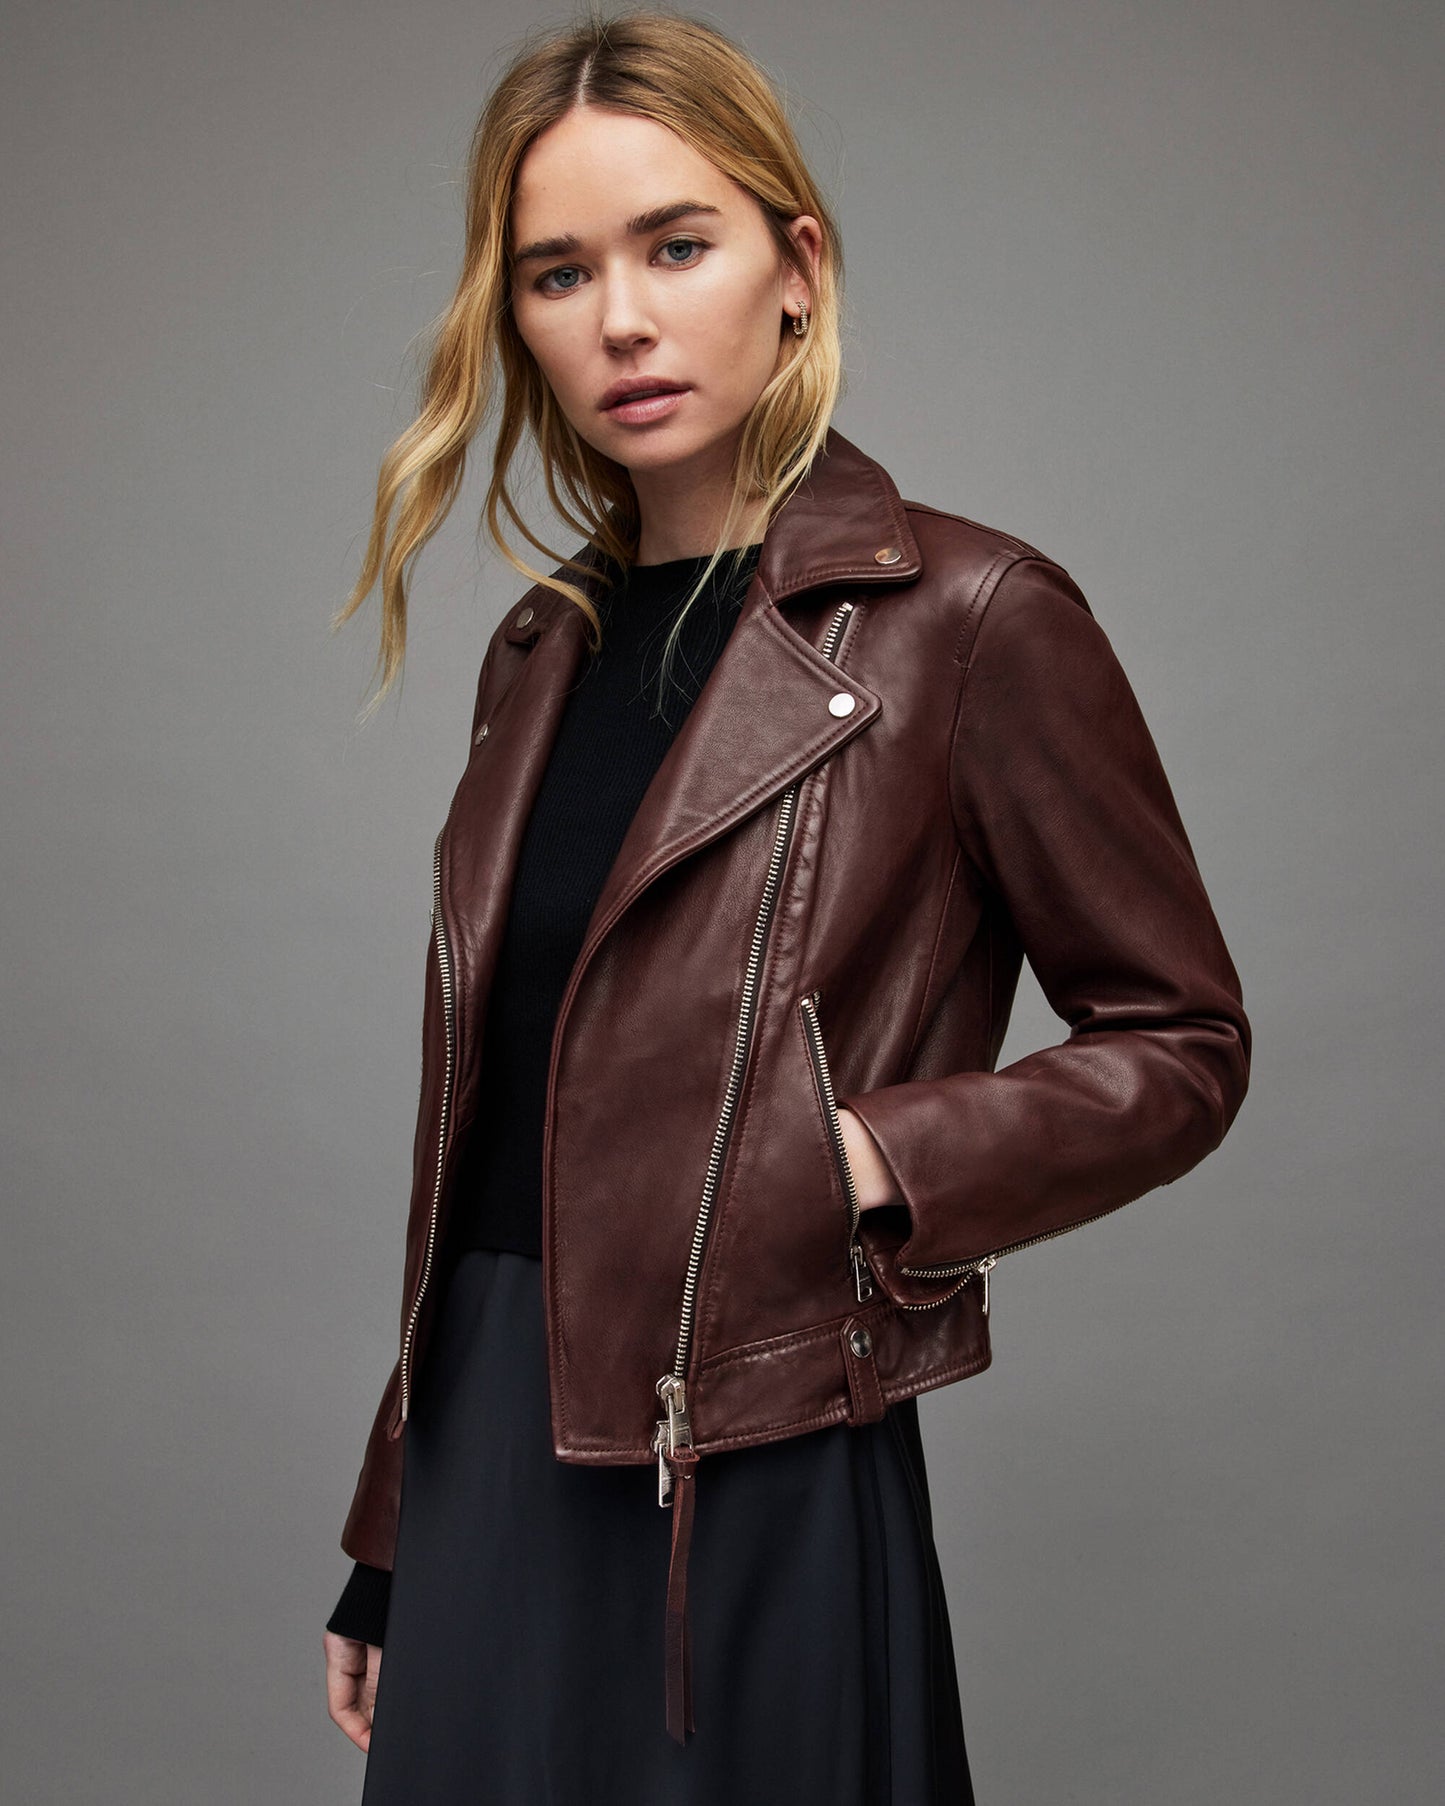 Women's Leather Biker Jacket In Maroon